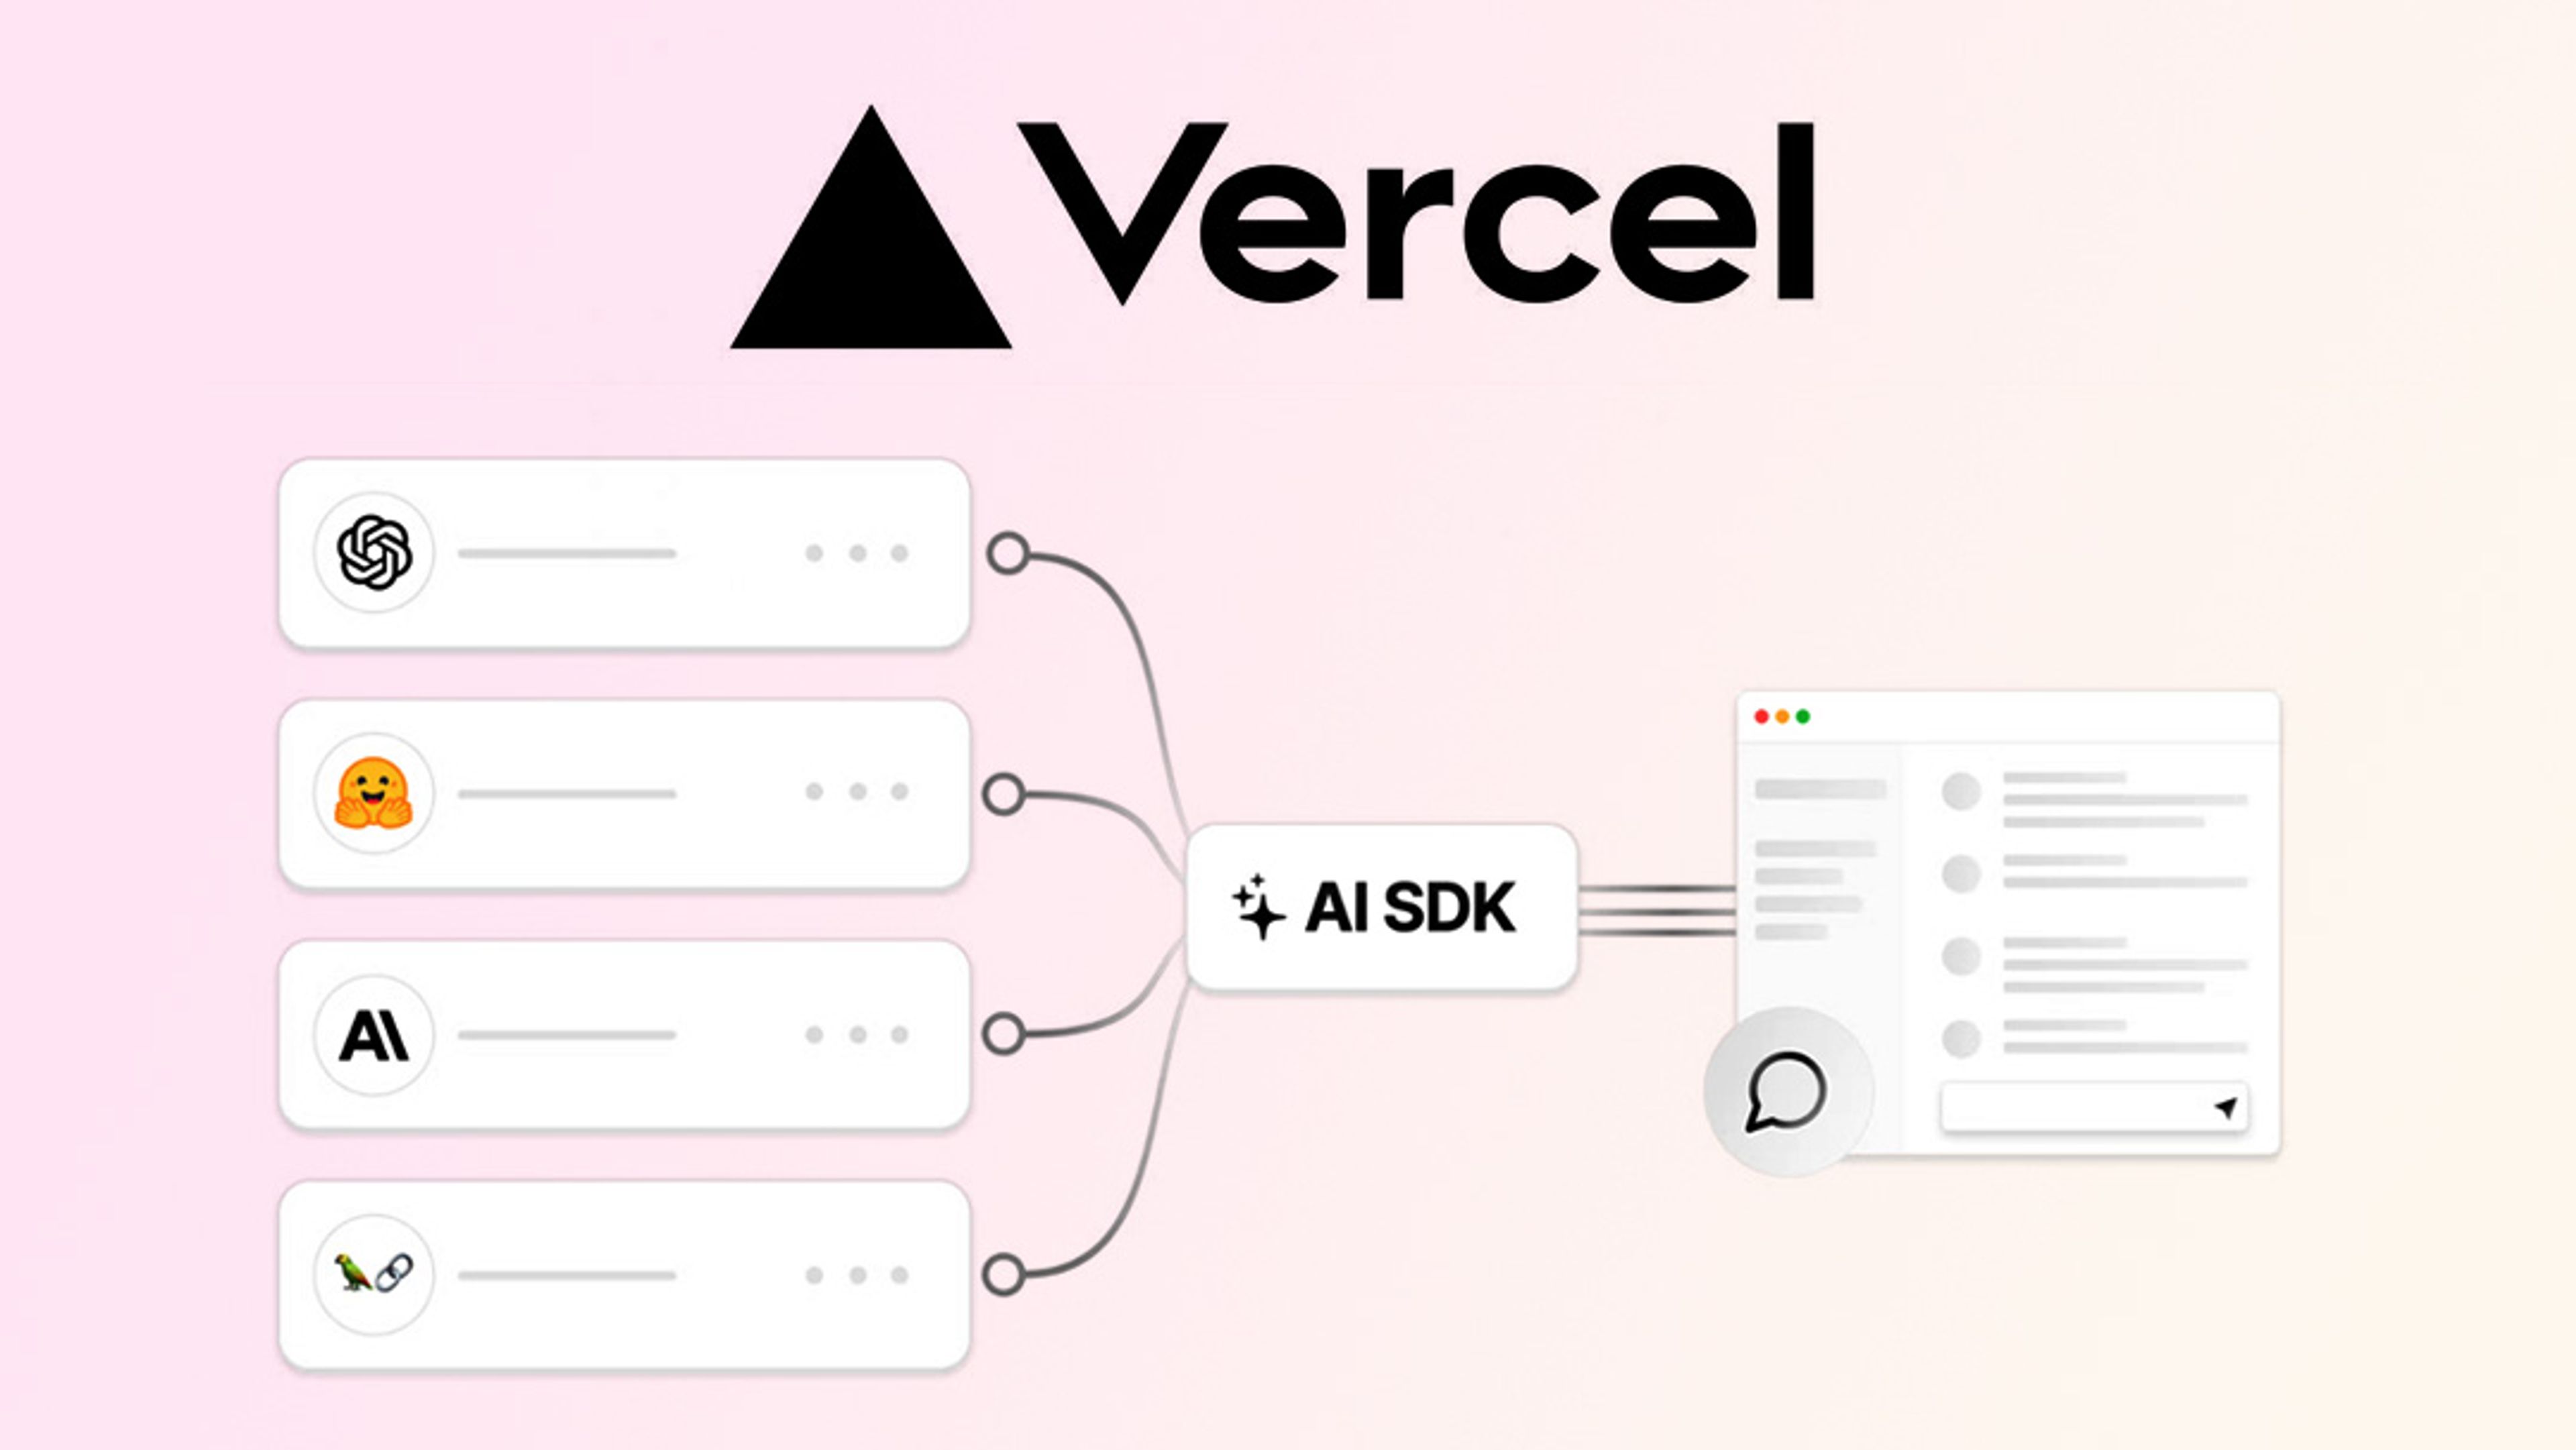 Vercel AI SDK diagram and logo